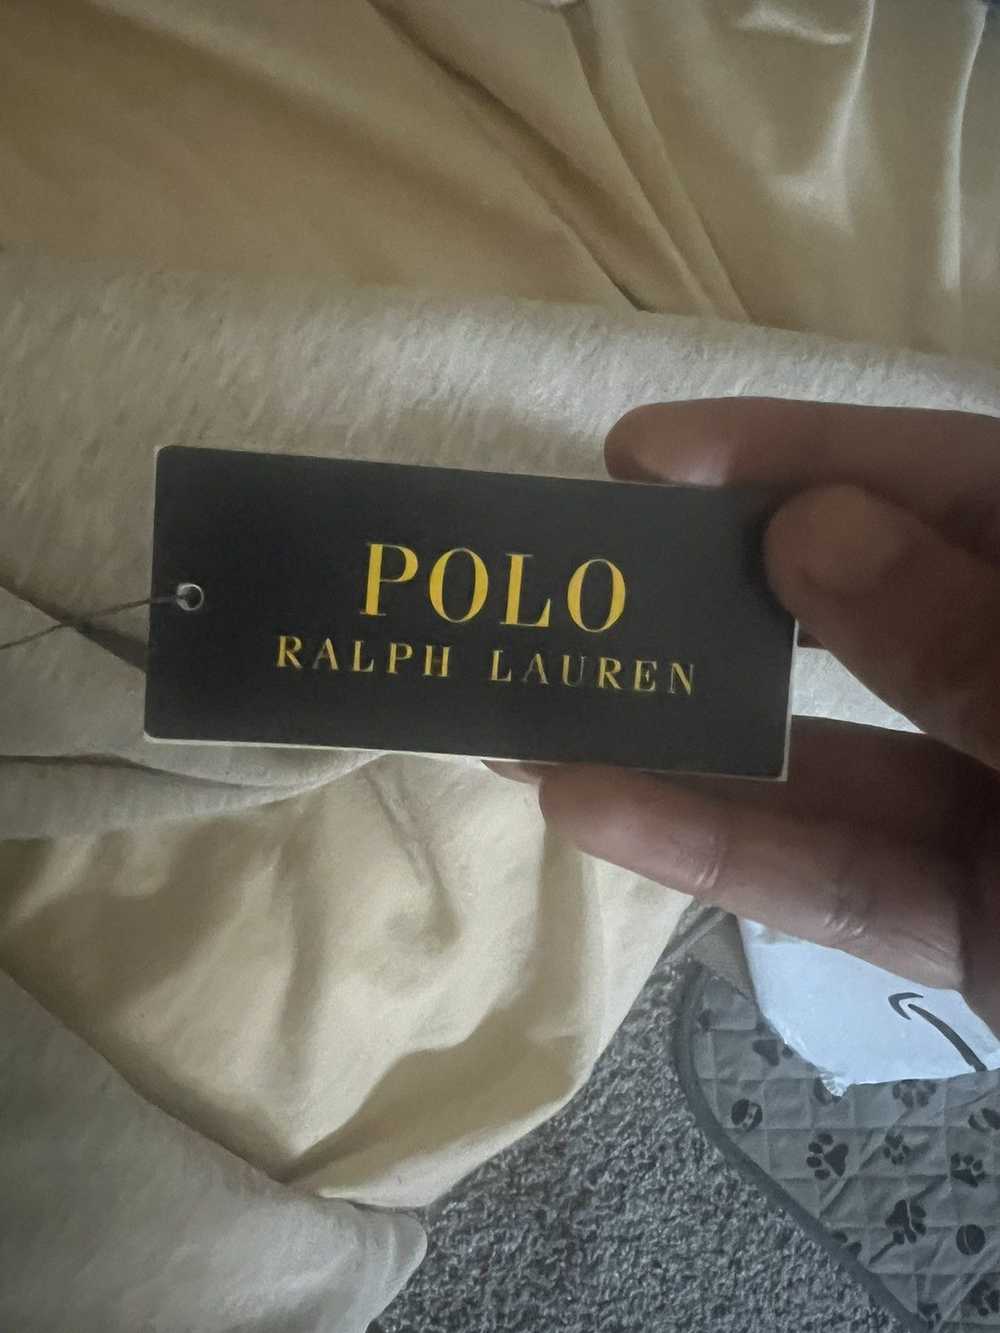 Polo Ralph Lauren Polo Ralph Lauren zip up - image 4